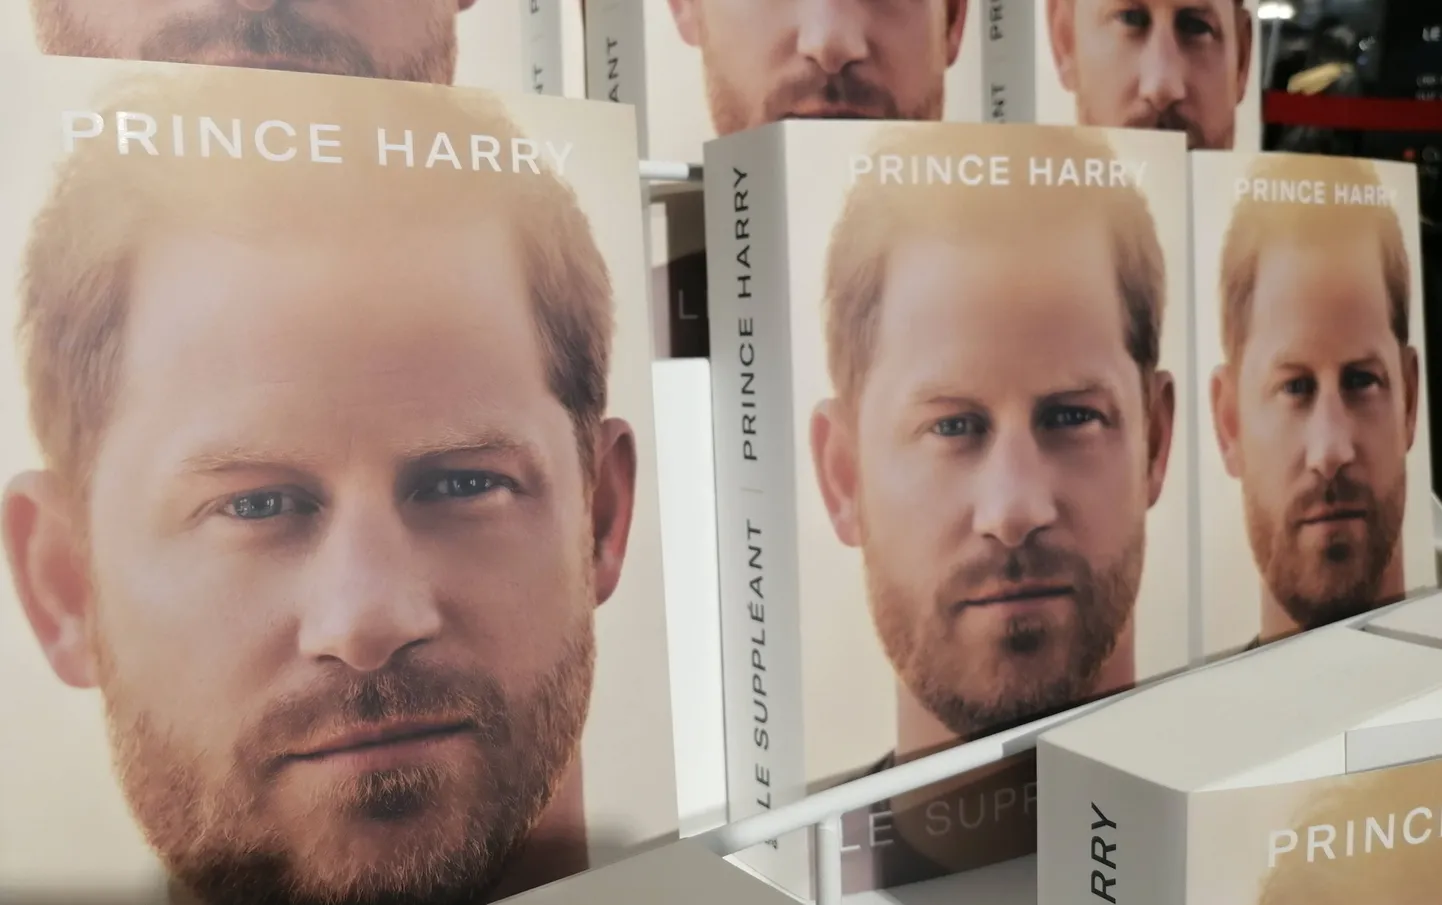 Londoni raamatupoodidest kaovad prints Harry memuaarid kiiresti.